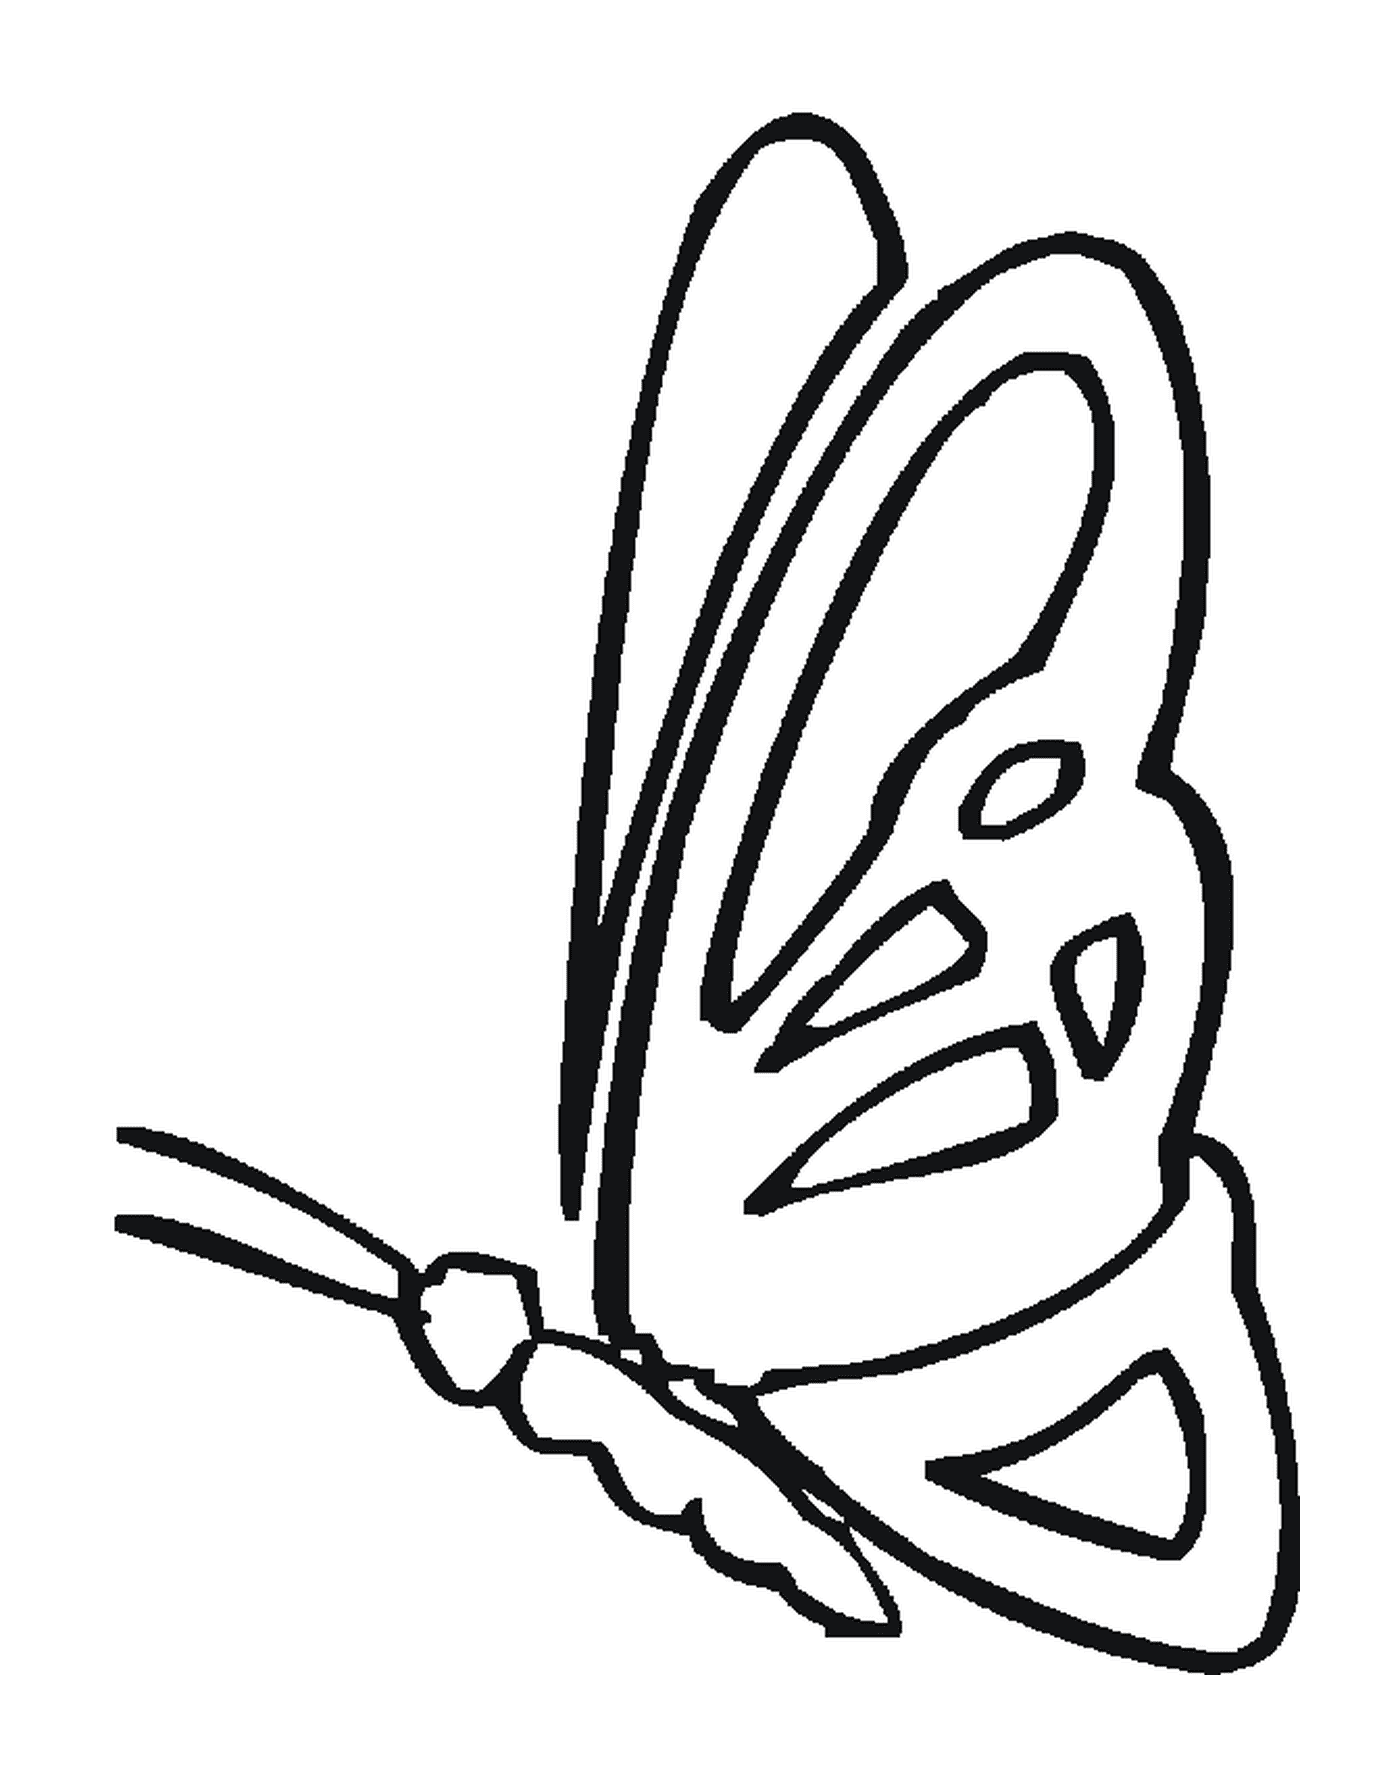  деликатный профиль бабочки 